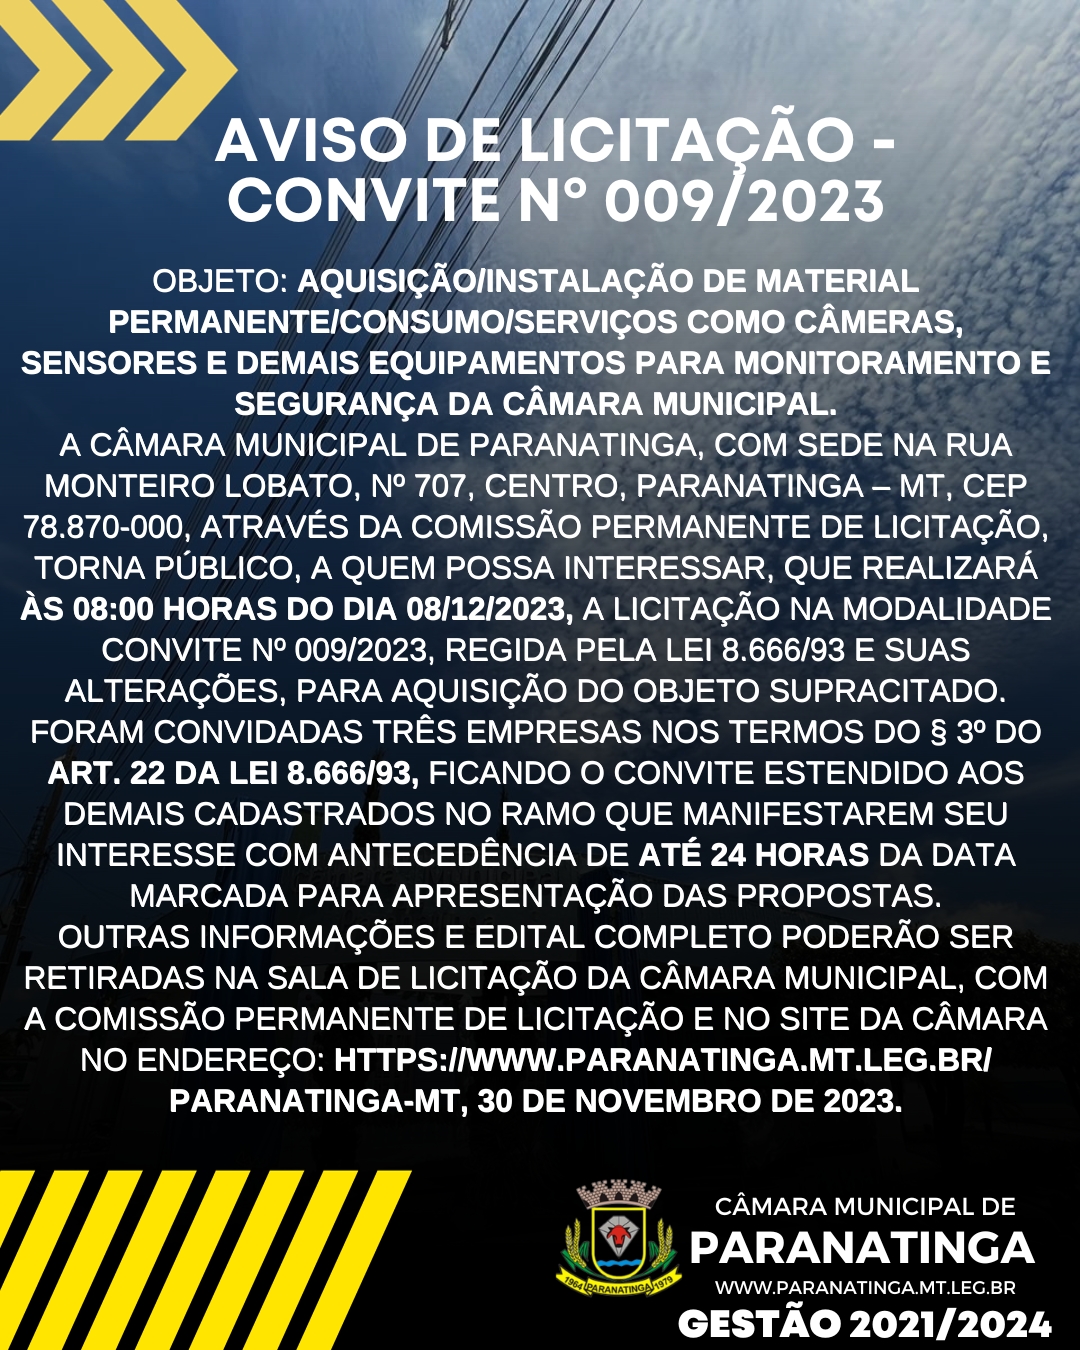 AVISO DE LICITAÇÃO - CONVITE Nº 009/2023